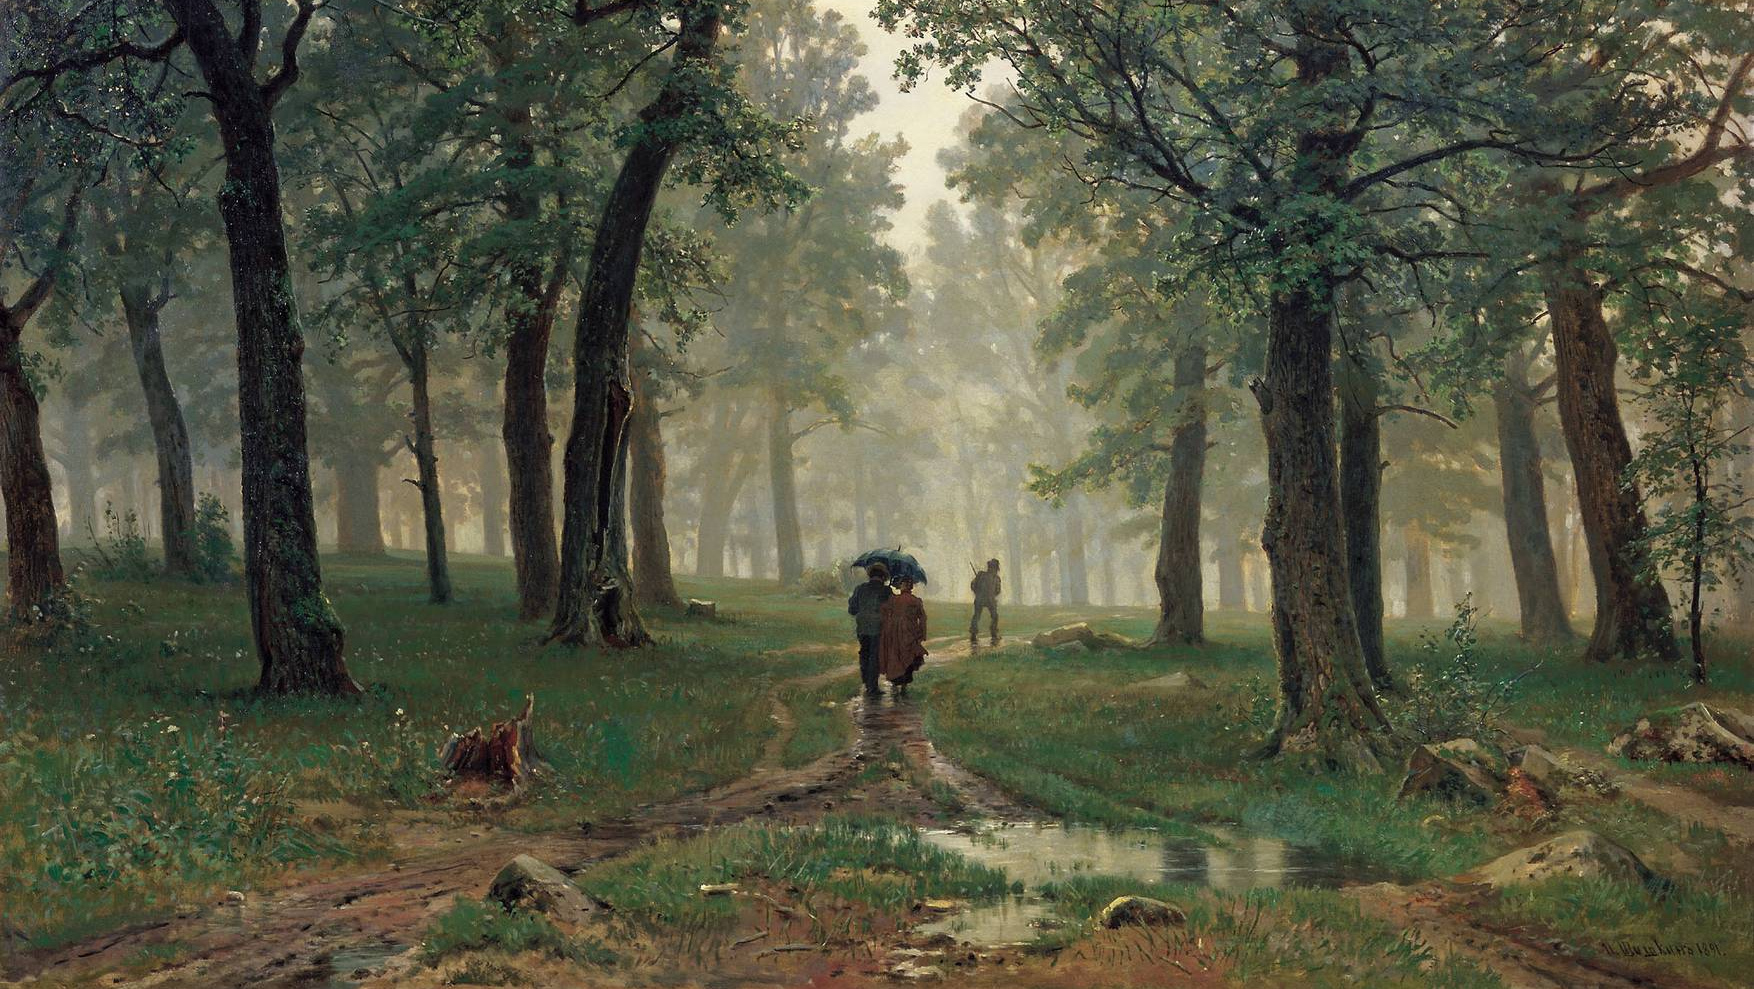 Дождь в дубовом лесу. 1891, холст, масло, 124×203 см